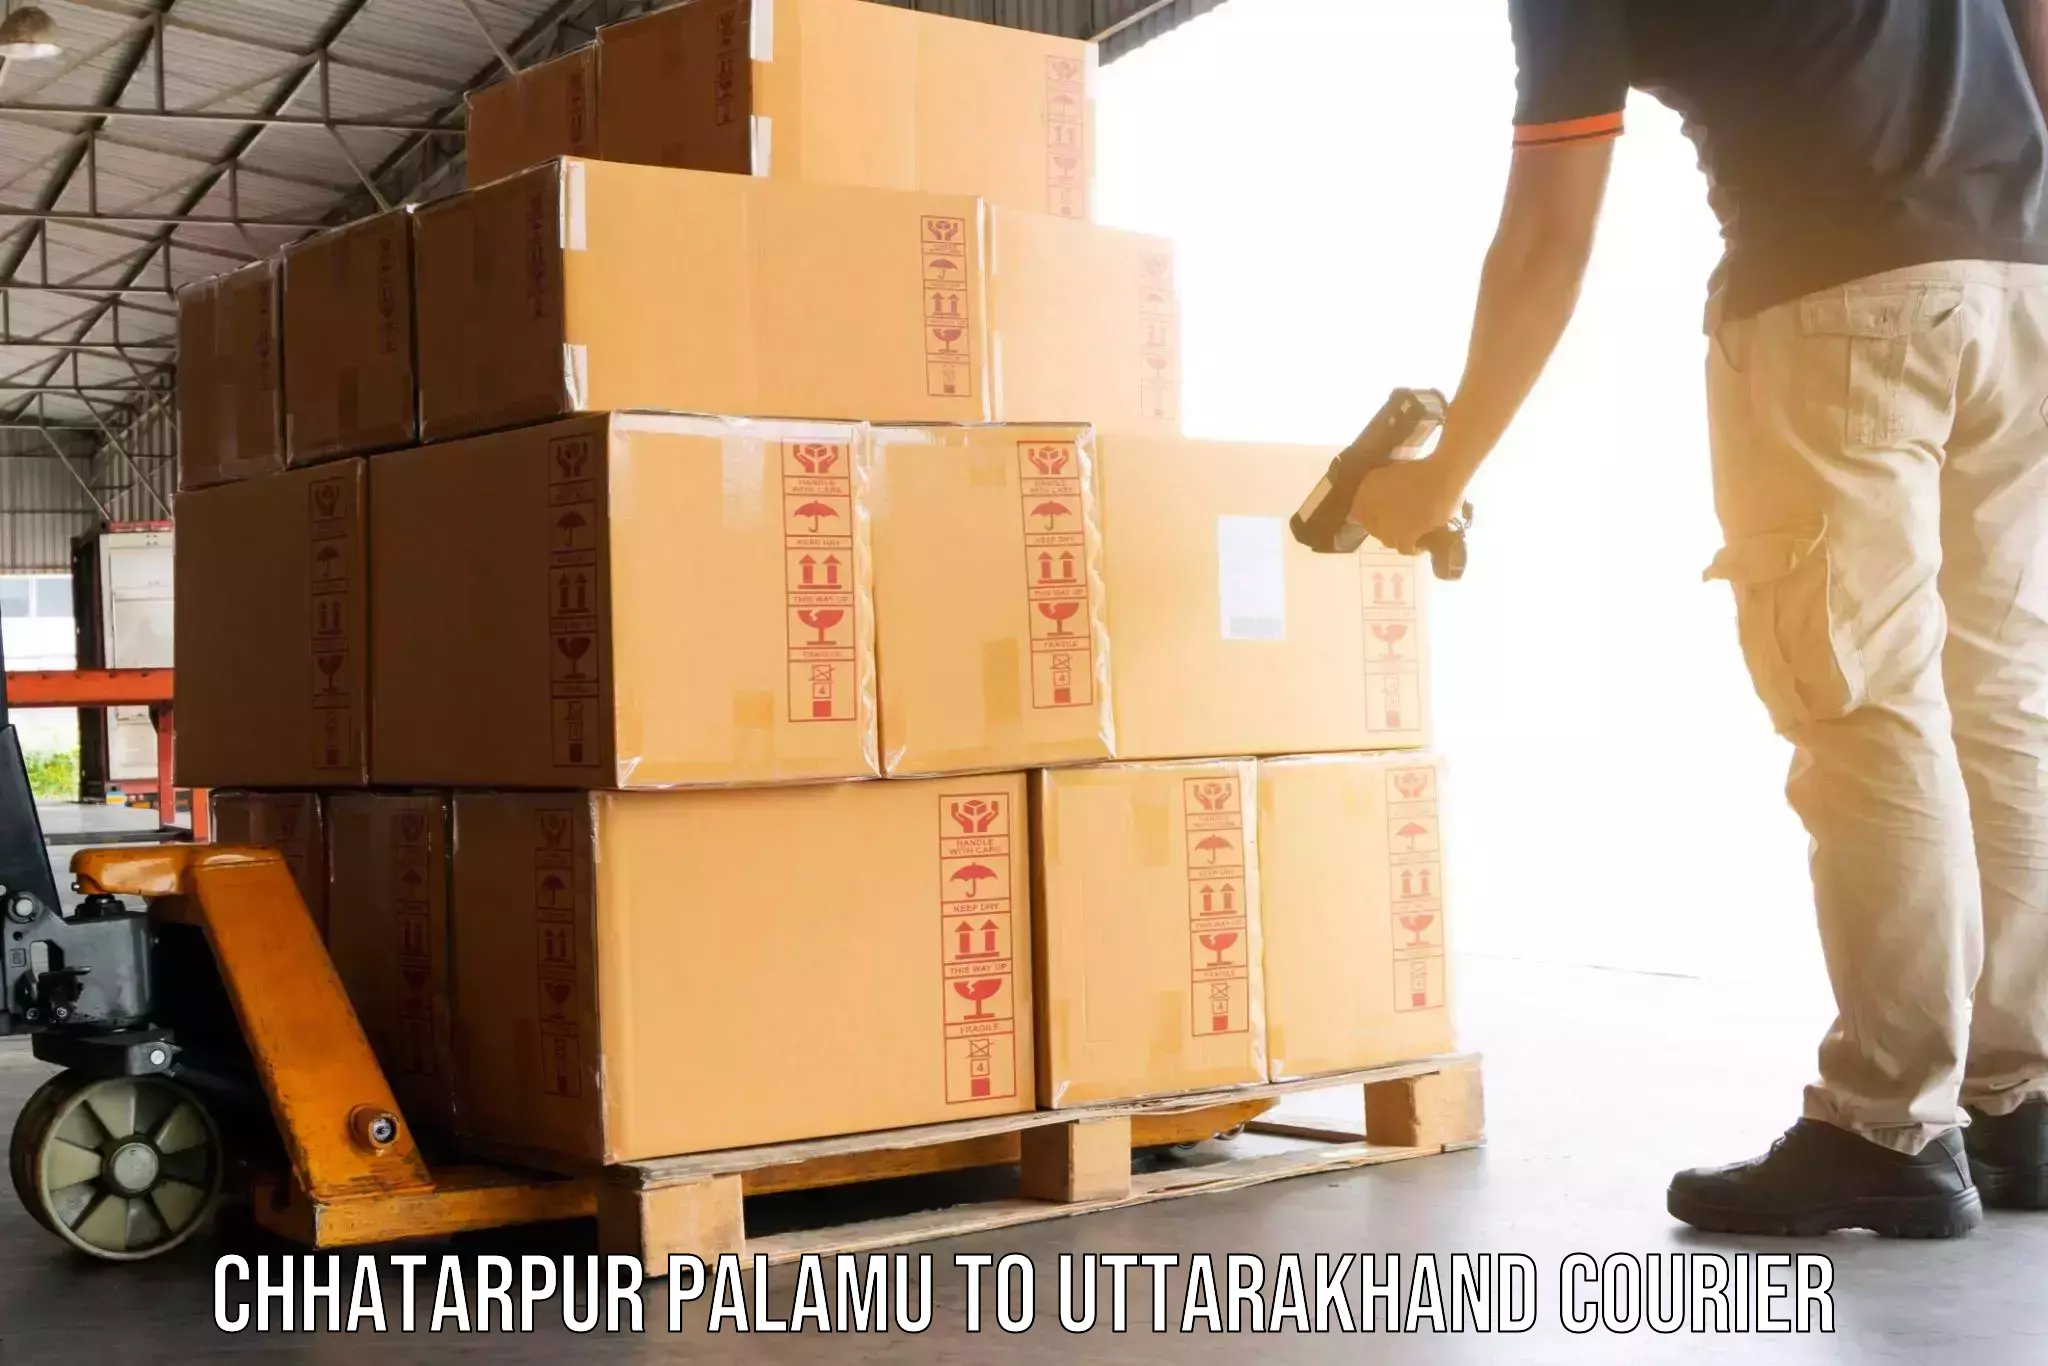 Efficient moving strategies Chhatarpur Palamu to Kotdwara